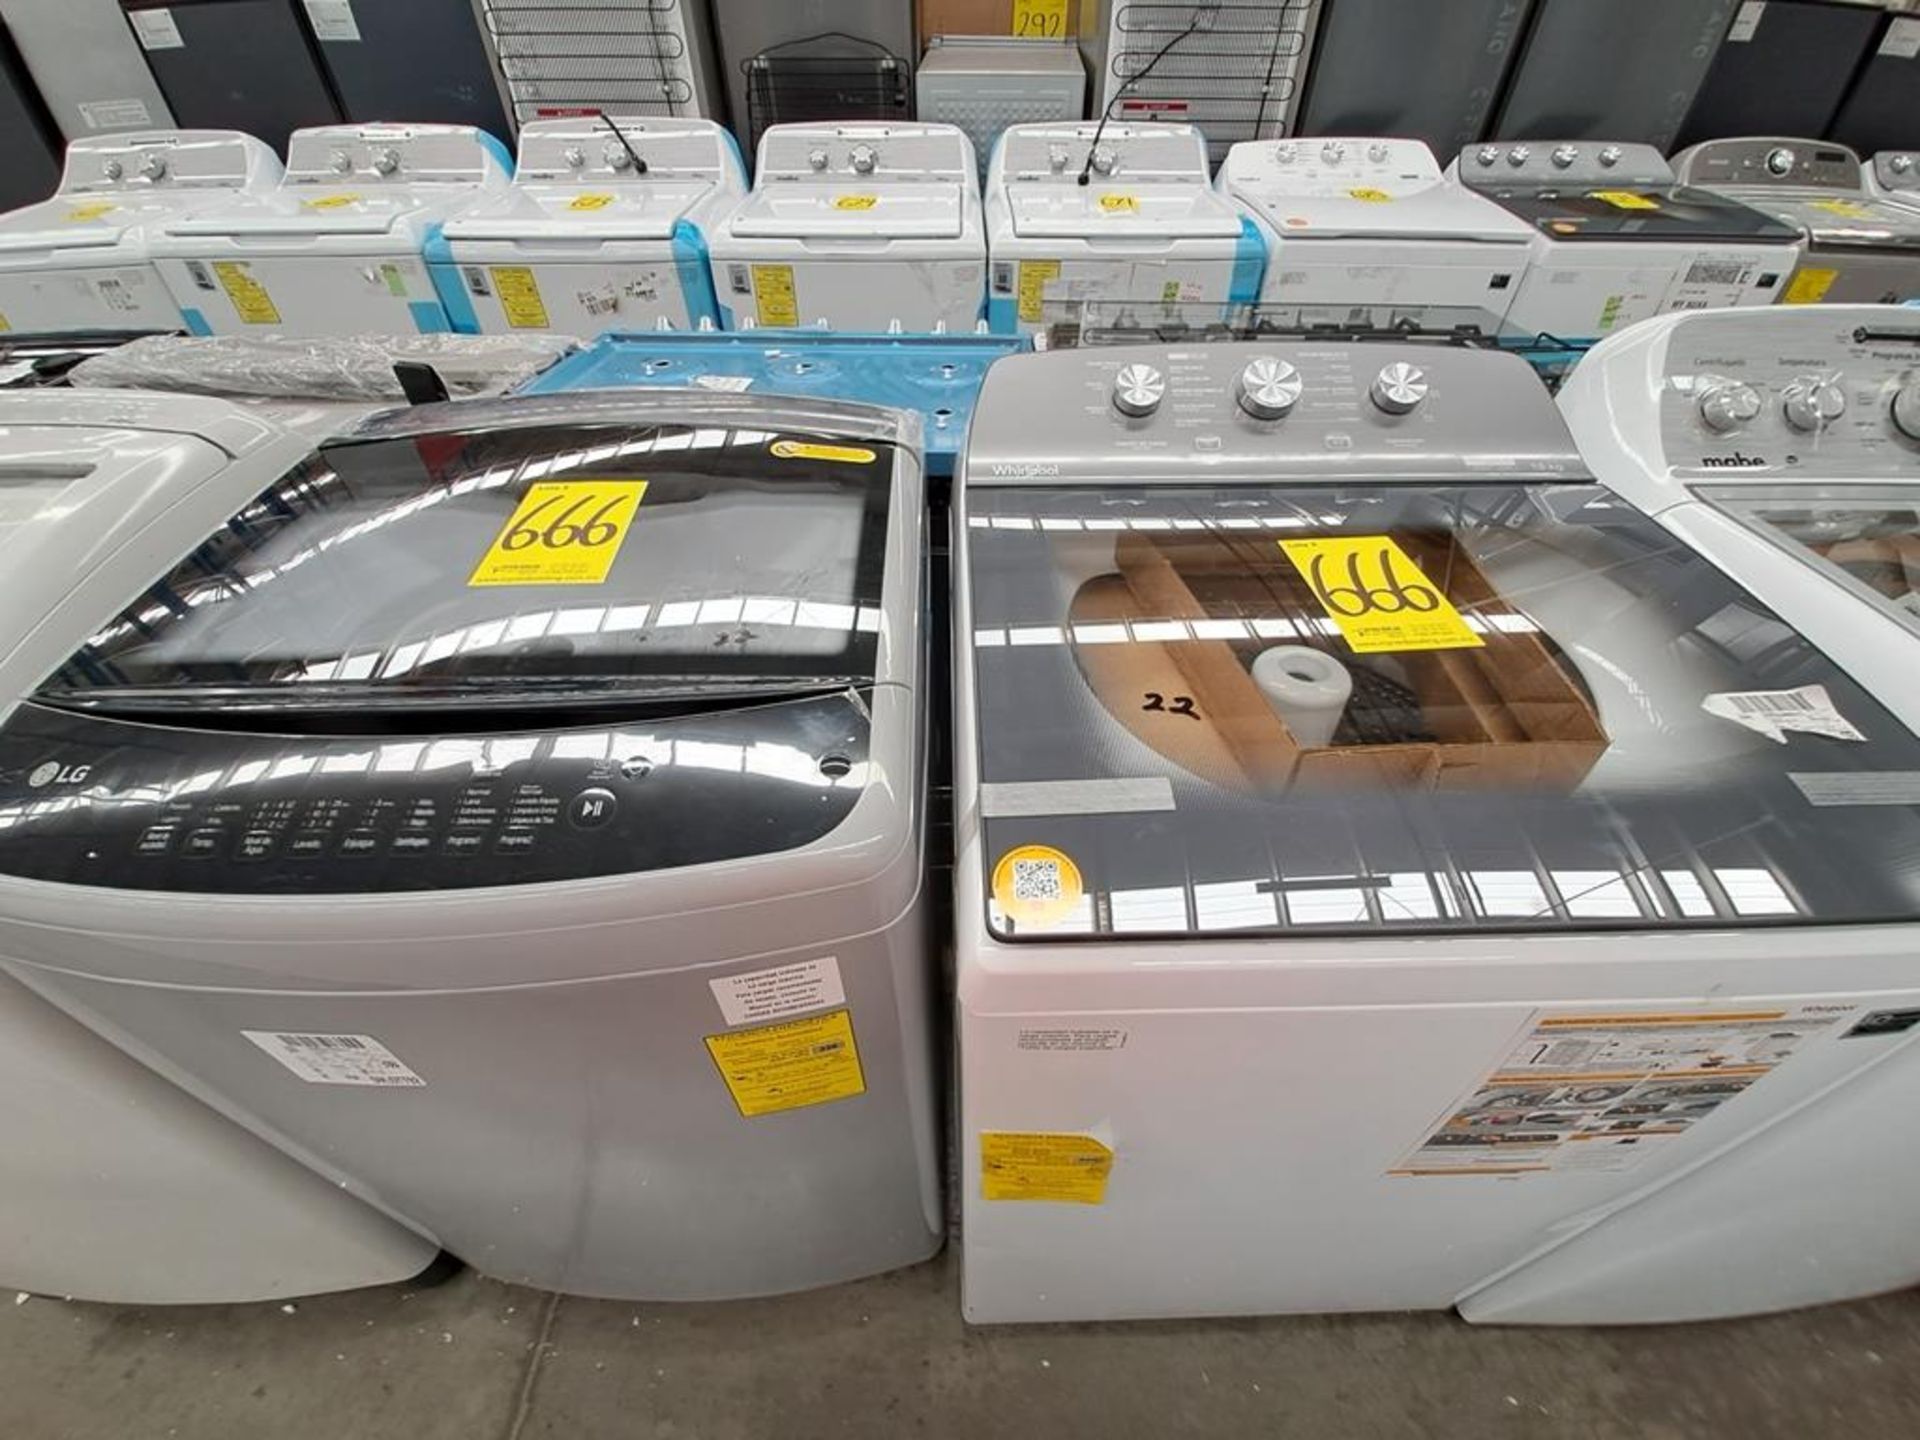 Lote de 2 lavadoras contiene: 1 Lavadora de 18 KG Marca LG, Modelo WT18DS8P, Serie ND, Color GRIS;